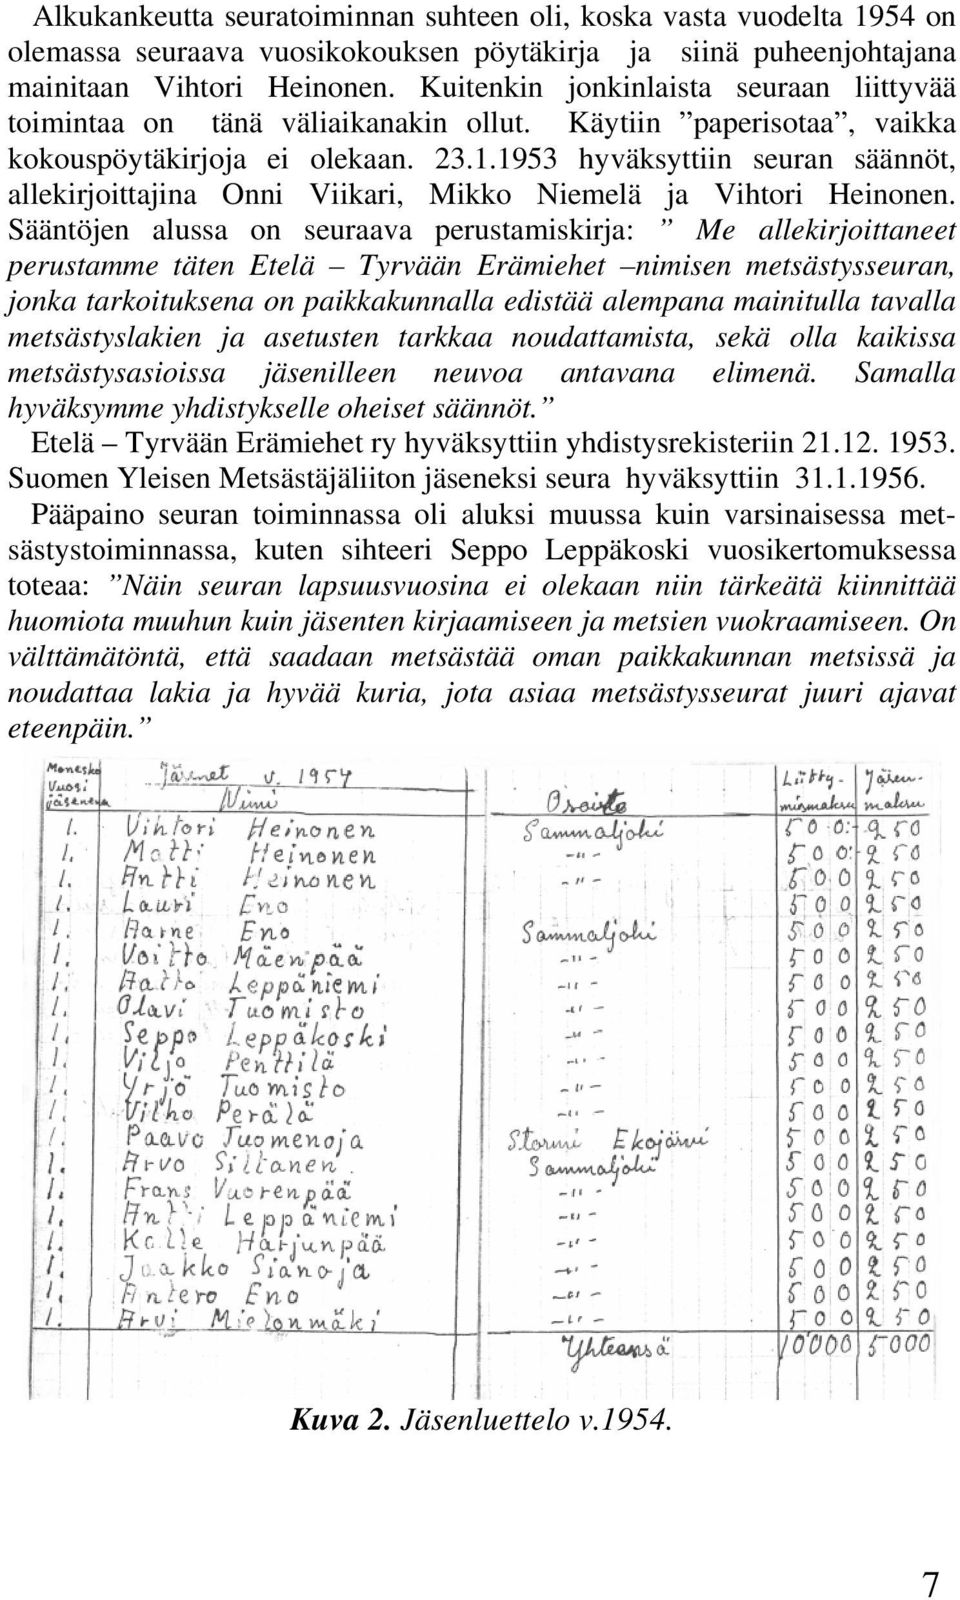 1953 hyväksyttiin seuran säännöt, allekirjoittajina Onni Viikari, Mikko Niemelä ja Vihtori Heinonen.